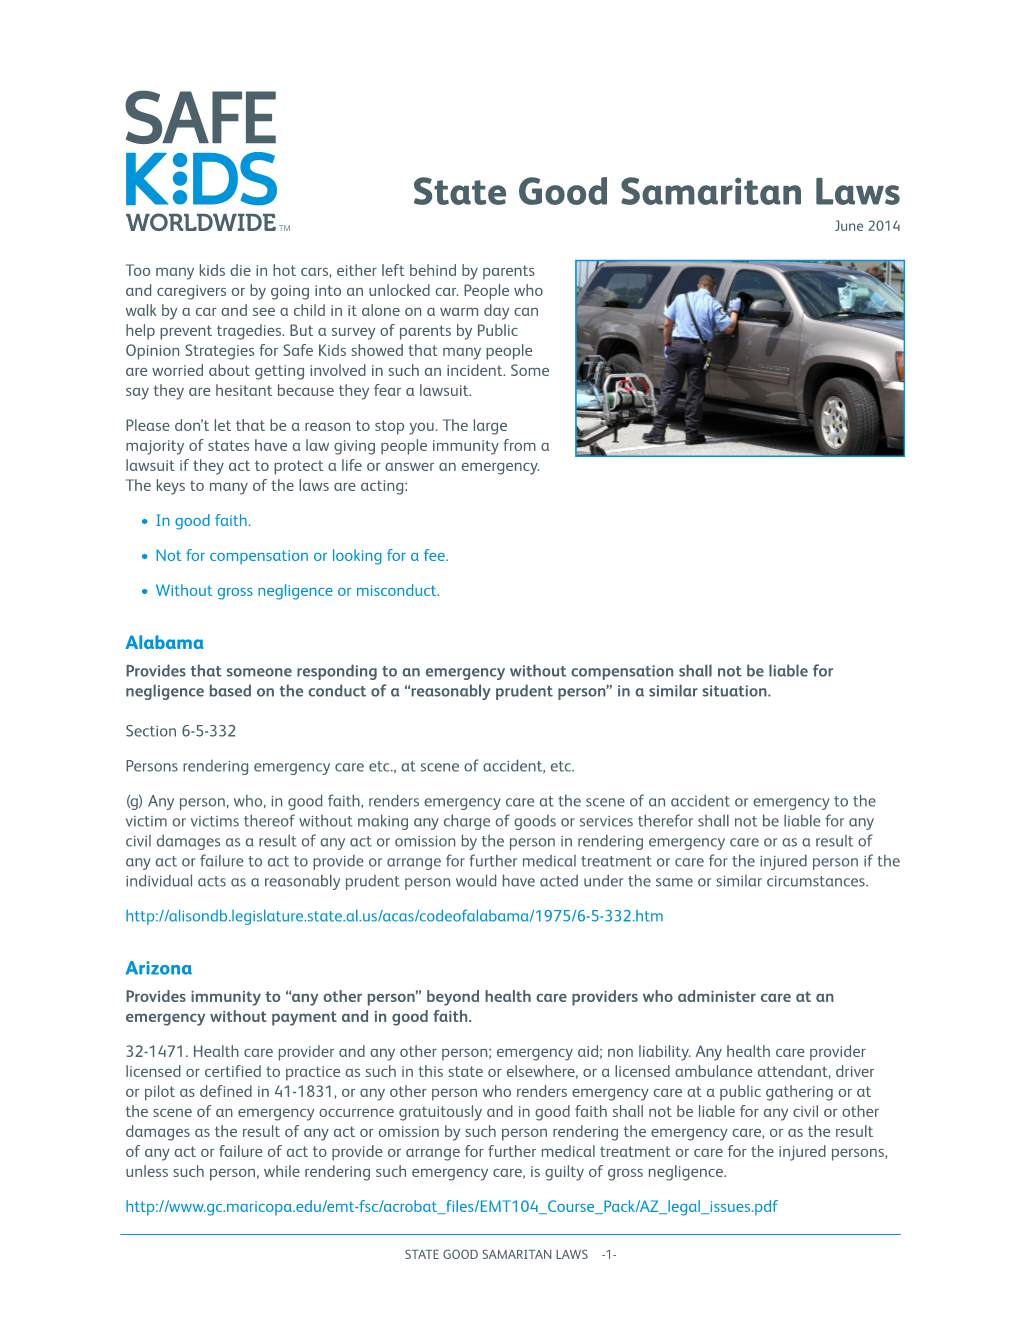 Good Samaritan Laws June 2014